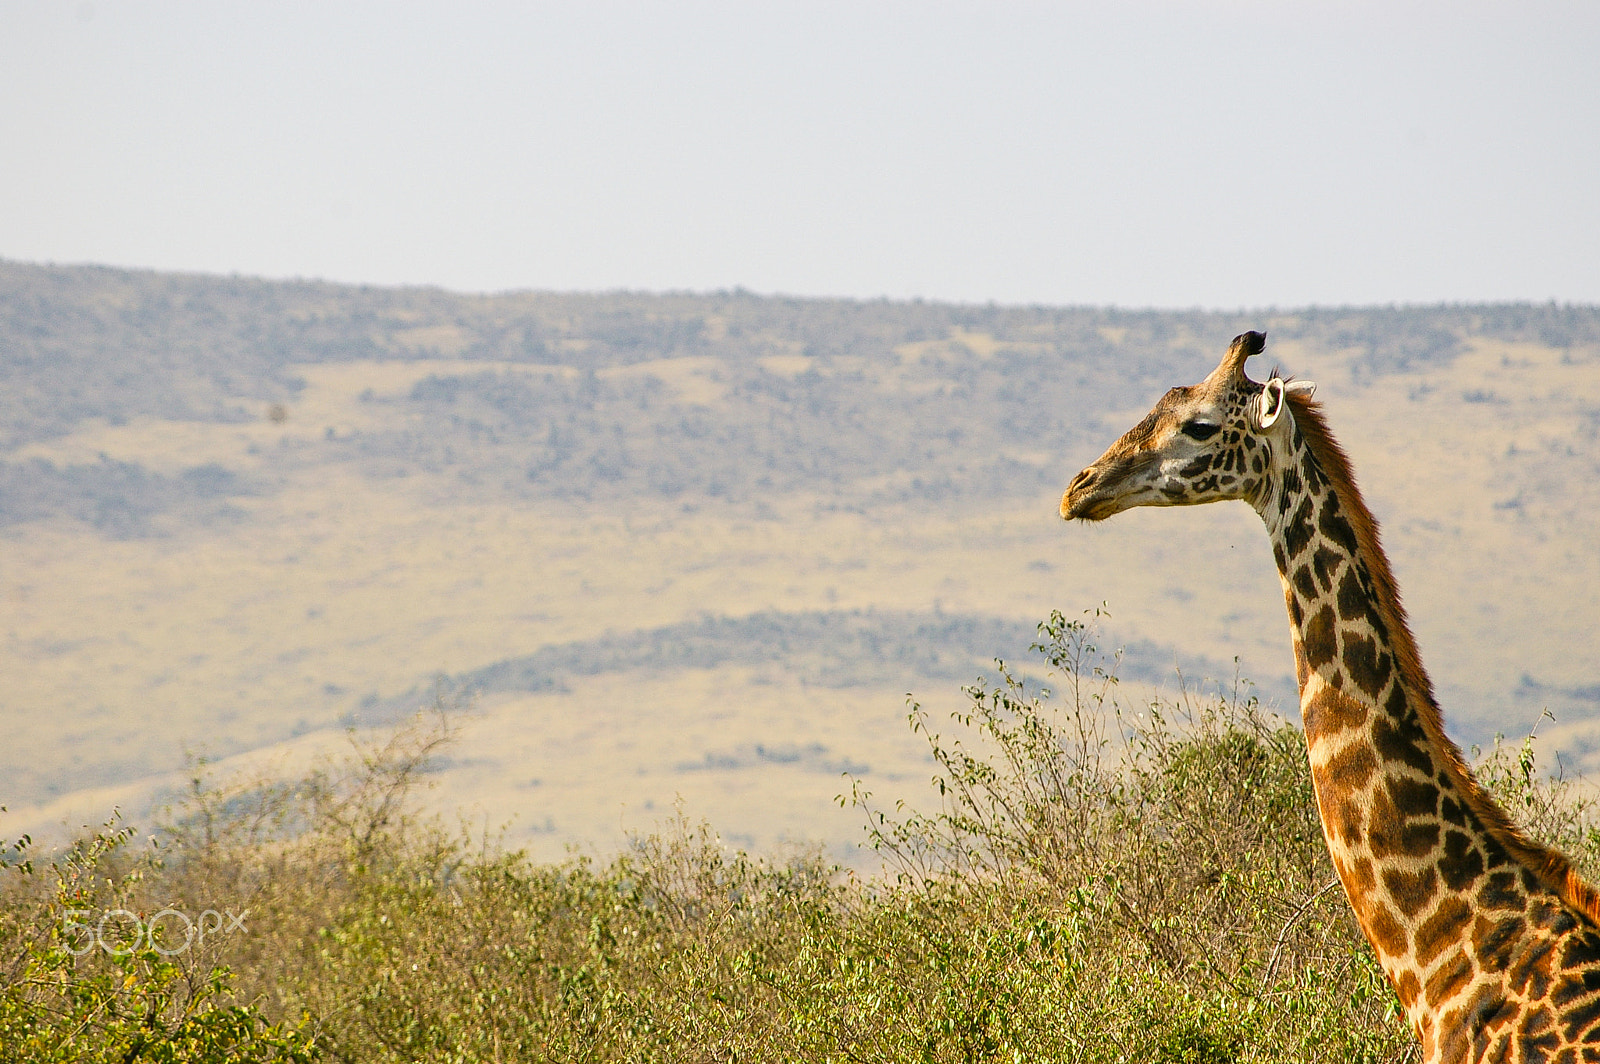 Pentax K100D + Pentax smc DA 50-200mm F4-5.6 ED sample photo. A giraffe in kenya's maasai mara photography